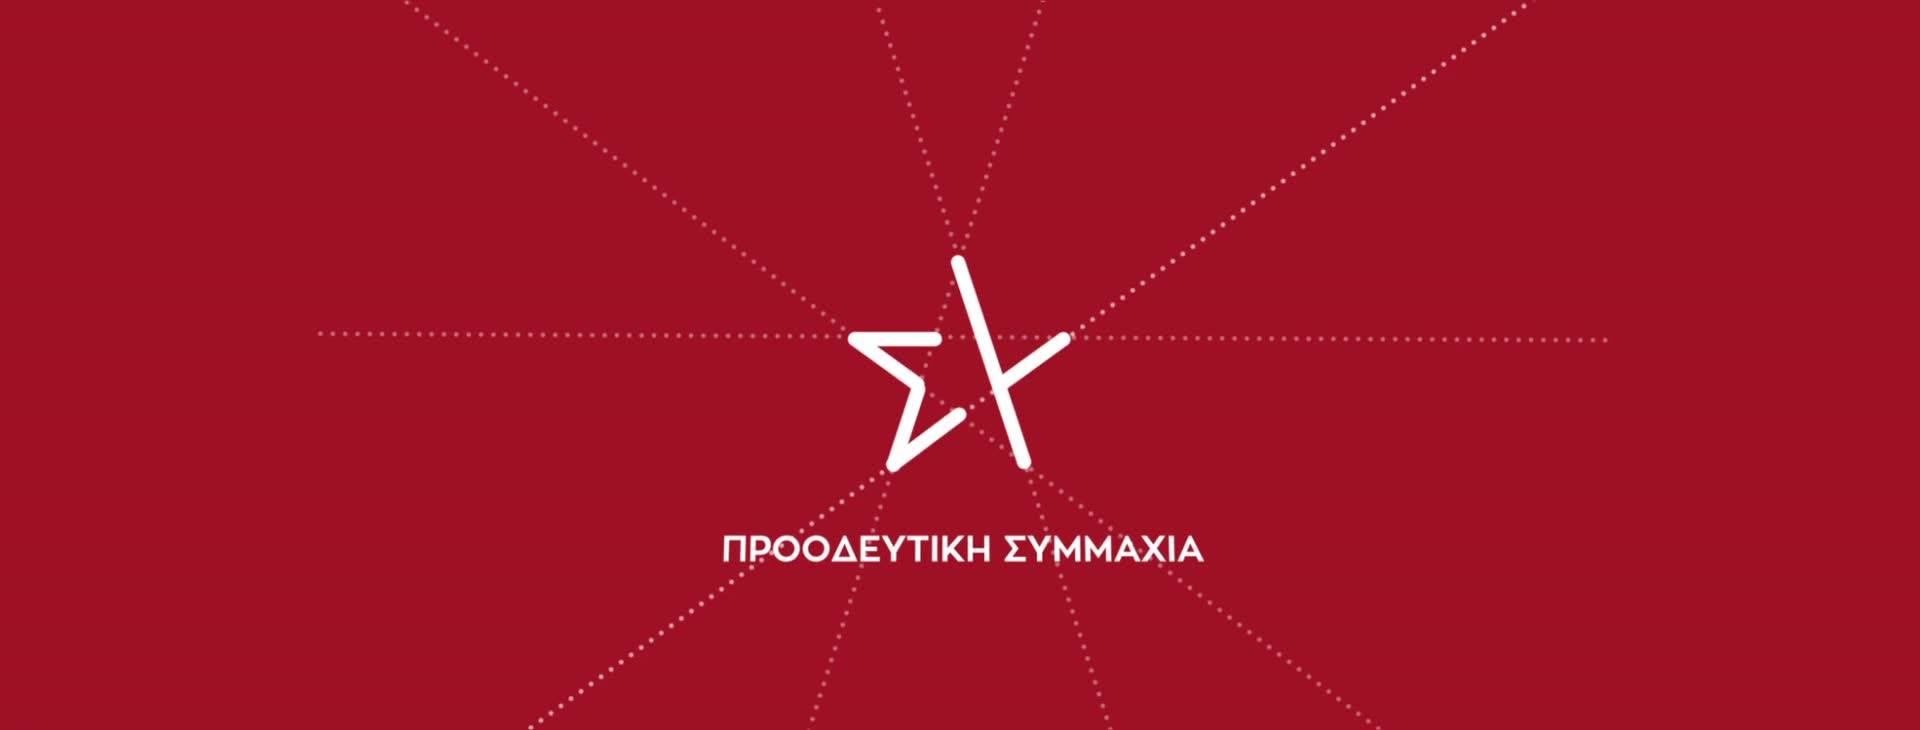 Ανάδειξη  της νέας Νομαρχιακής Επιτροπής  του ΣΥΡΙΖΑ ΠΣ του Νομού Καστοριάς